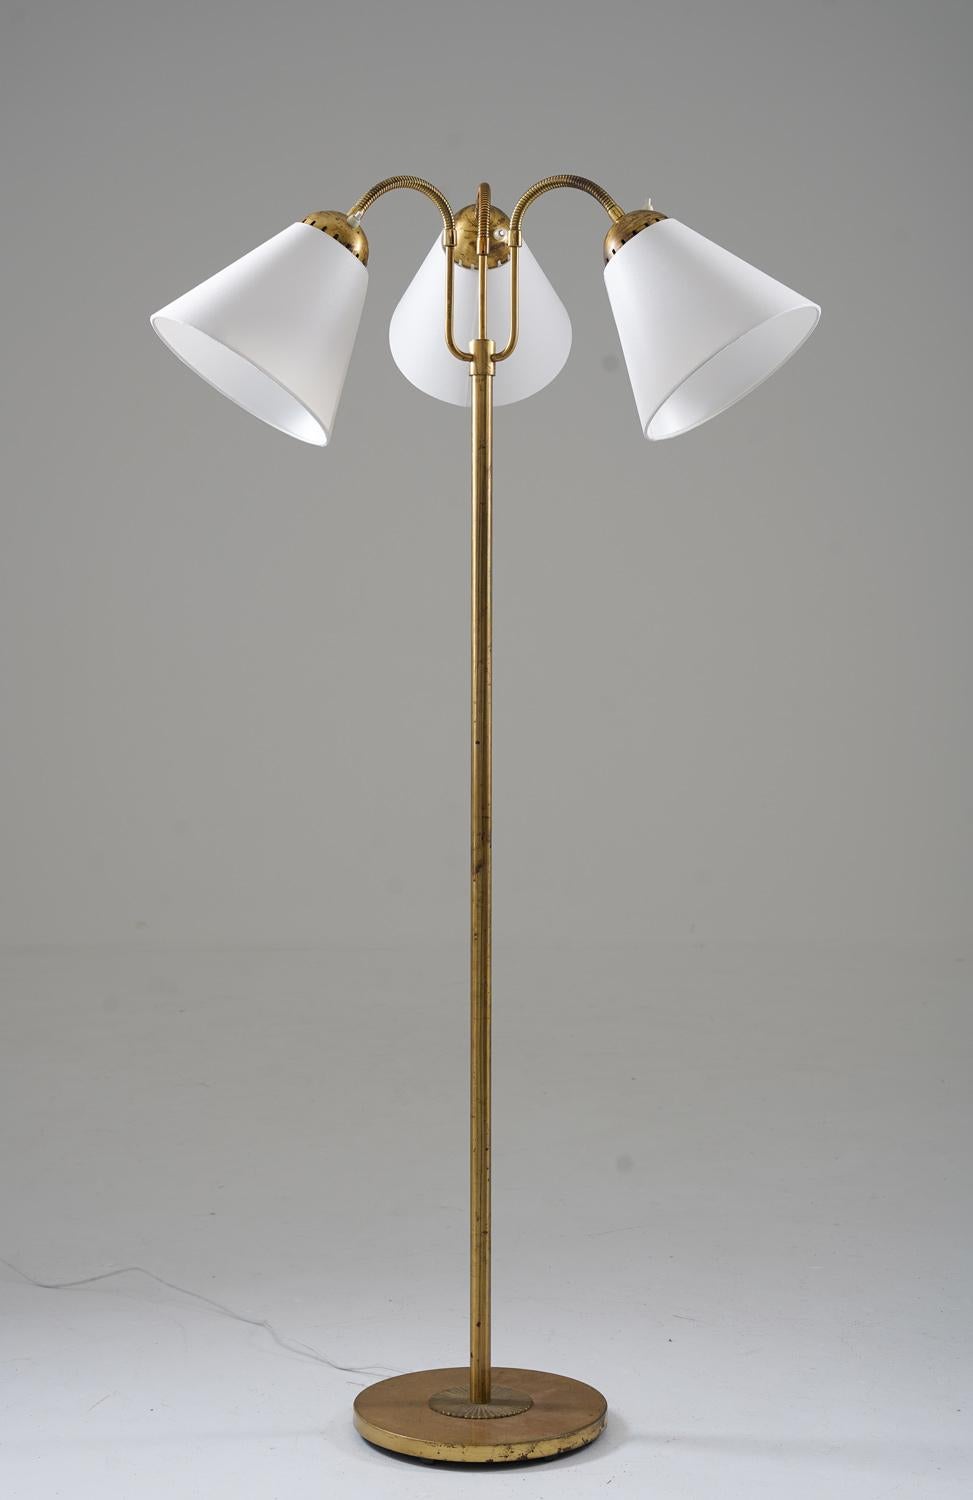 Voici un captivant lampadaire moderne suédois des années 1940, fabriqué avec expertise par Böhlmarks. Cette pièce exquise est dotée de trois sources lumineuses réglables, ce qui ajoute une touche de polyvalence à son design.

Conservant son charme